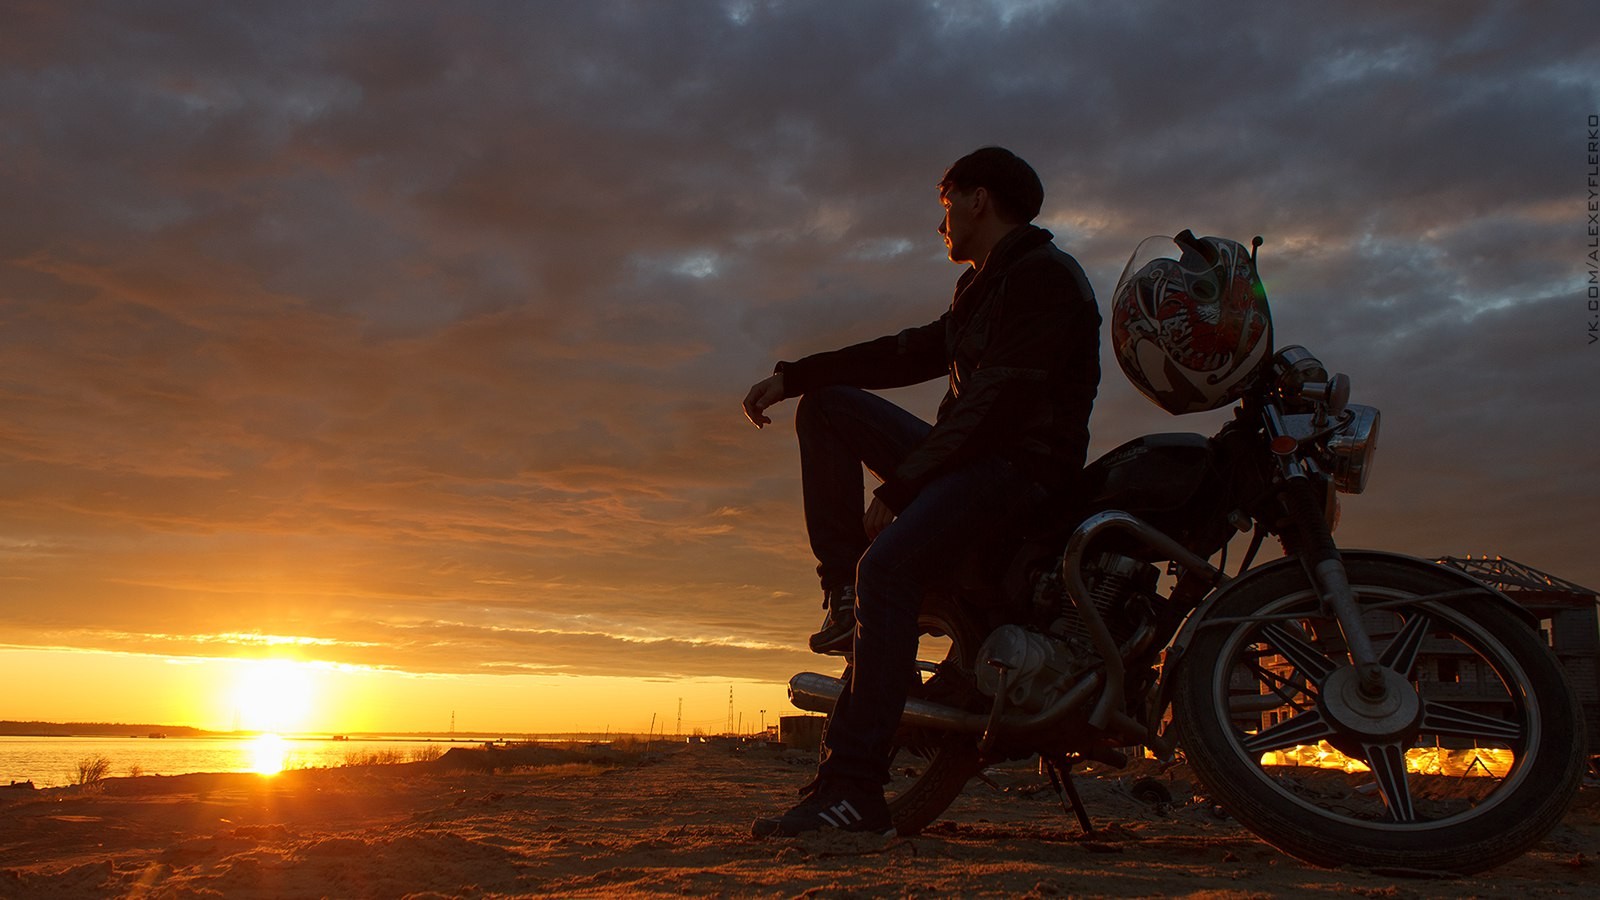 People 1600x900 Alexey Flerko motorcycle sunset sunrise vehicle men men outdoors sunlight sky